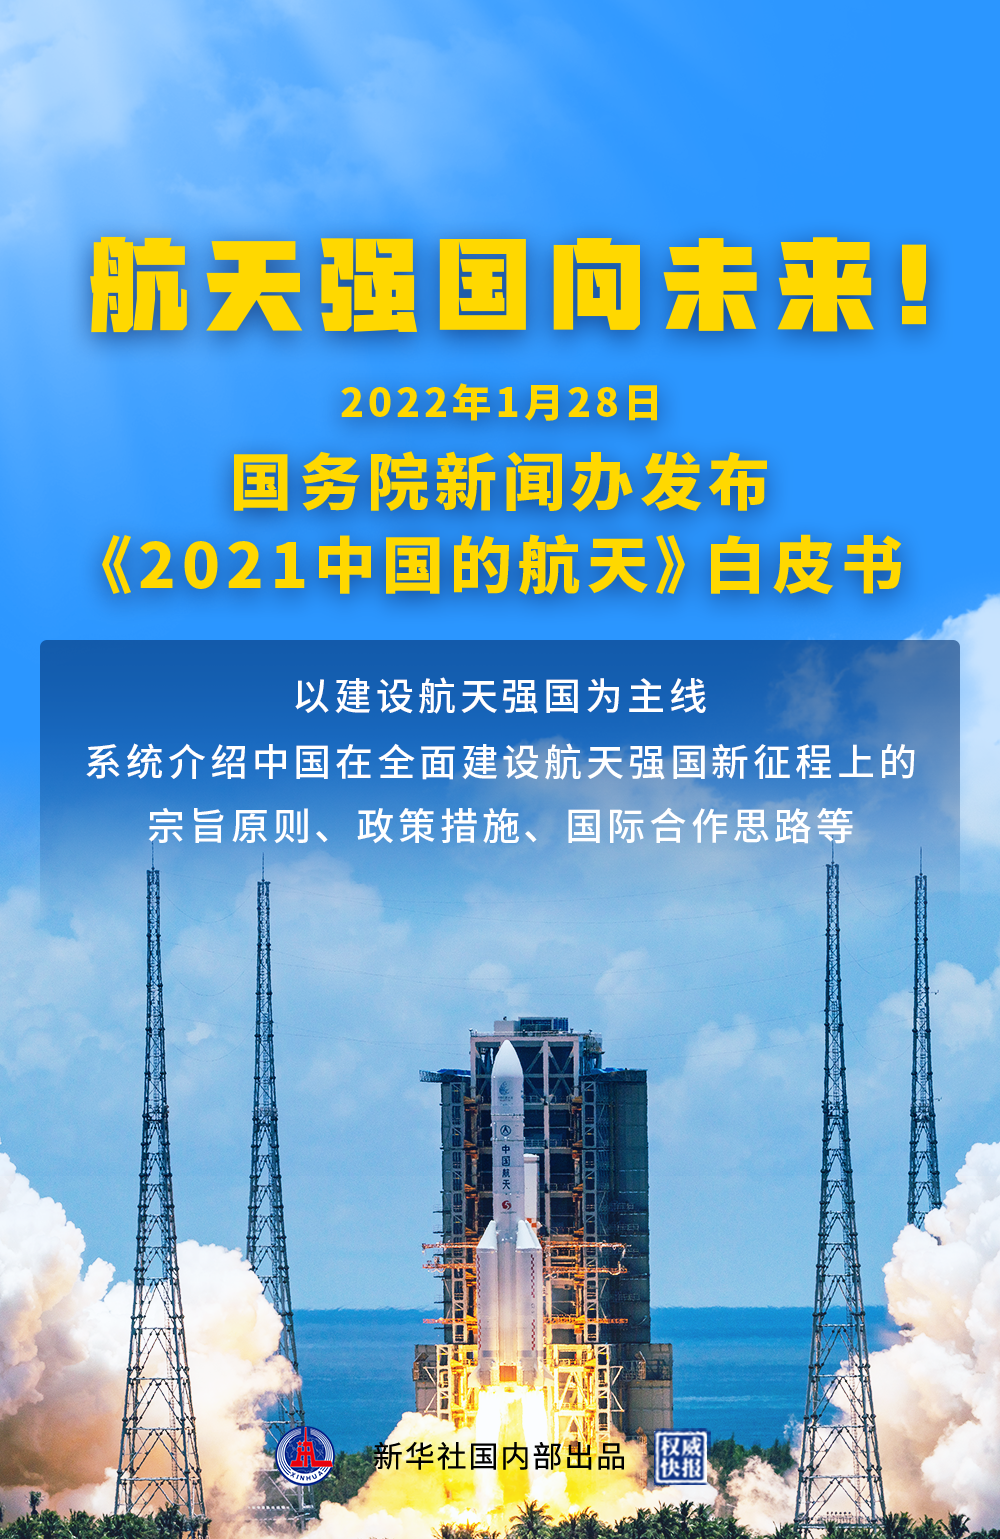 《2021中国的航天》白皮书发布